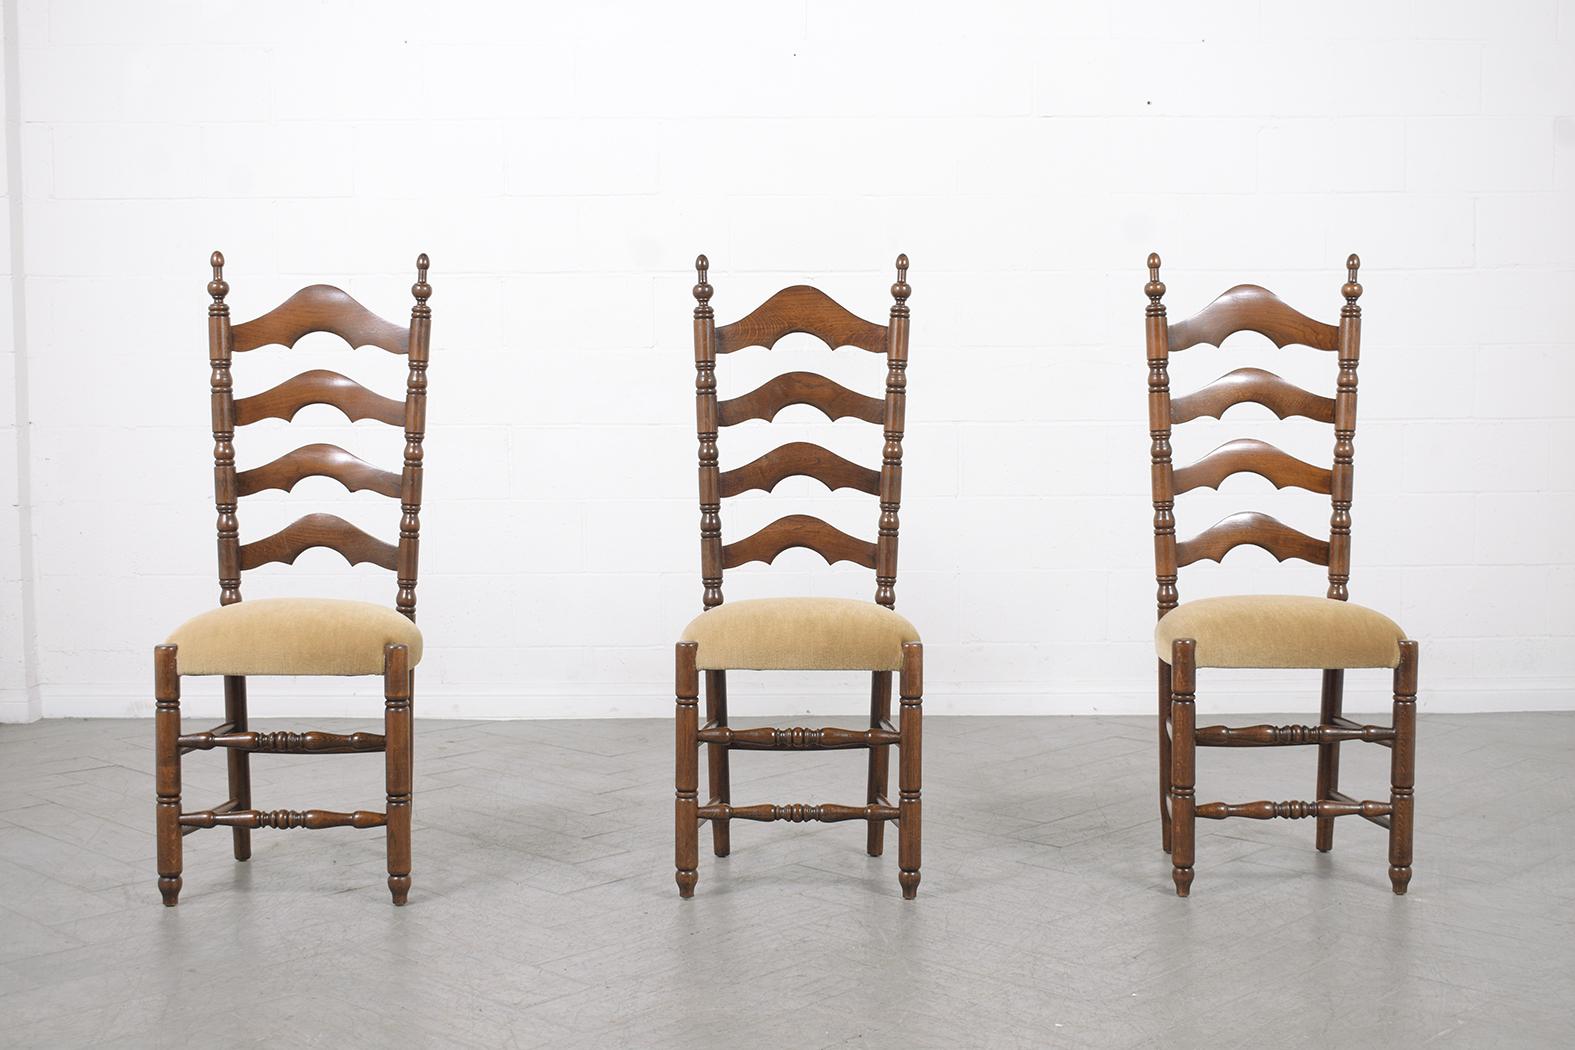 Wir stellen Ihnen unser außergewöhnliches Set von sechs französischen Provinzial-Esszimmerstühlen vor, die aus der Zeit um 1900 stammen. Diese Stühle wurden von unserem hauseigenen Team von Fachleuten sorgfältig restauriert und neu gepolstert, so